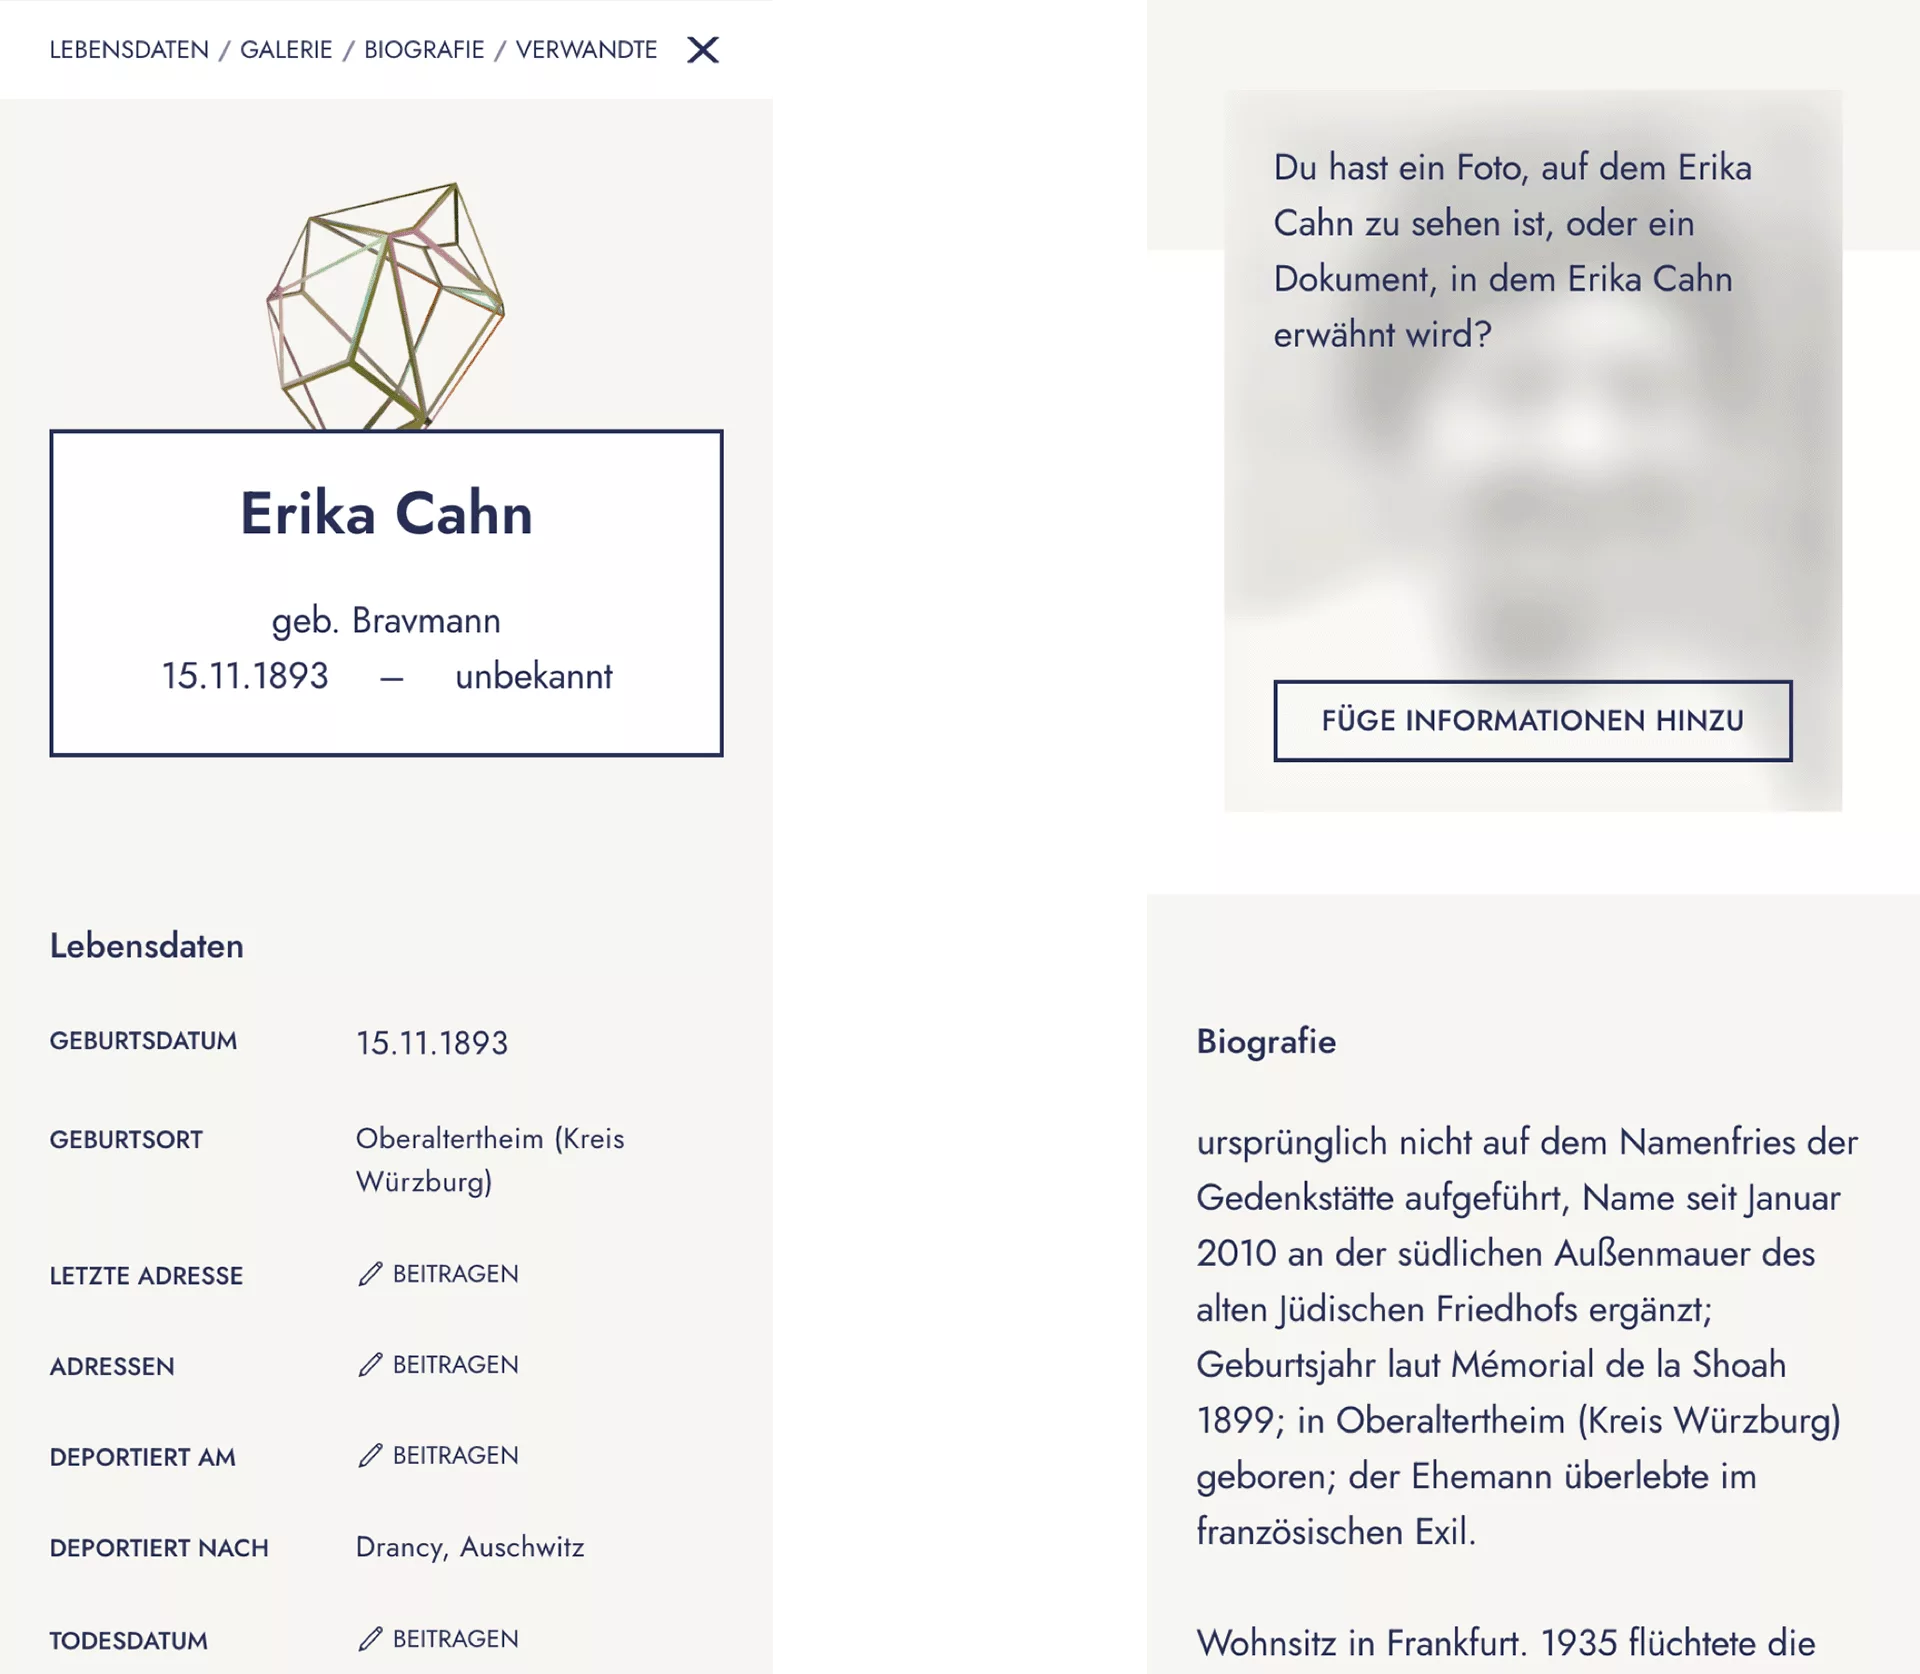 Auf zwei mobilen Screens wird die Biografie von einem der Opfer (Erika Cahn) gezeigt. Geburtsort, Datum und der Ort der Deportation sind angegeben. Bei Adresse und den Daten der Deportation steht der Call to Action "beitragen".